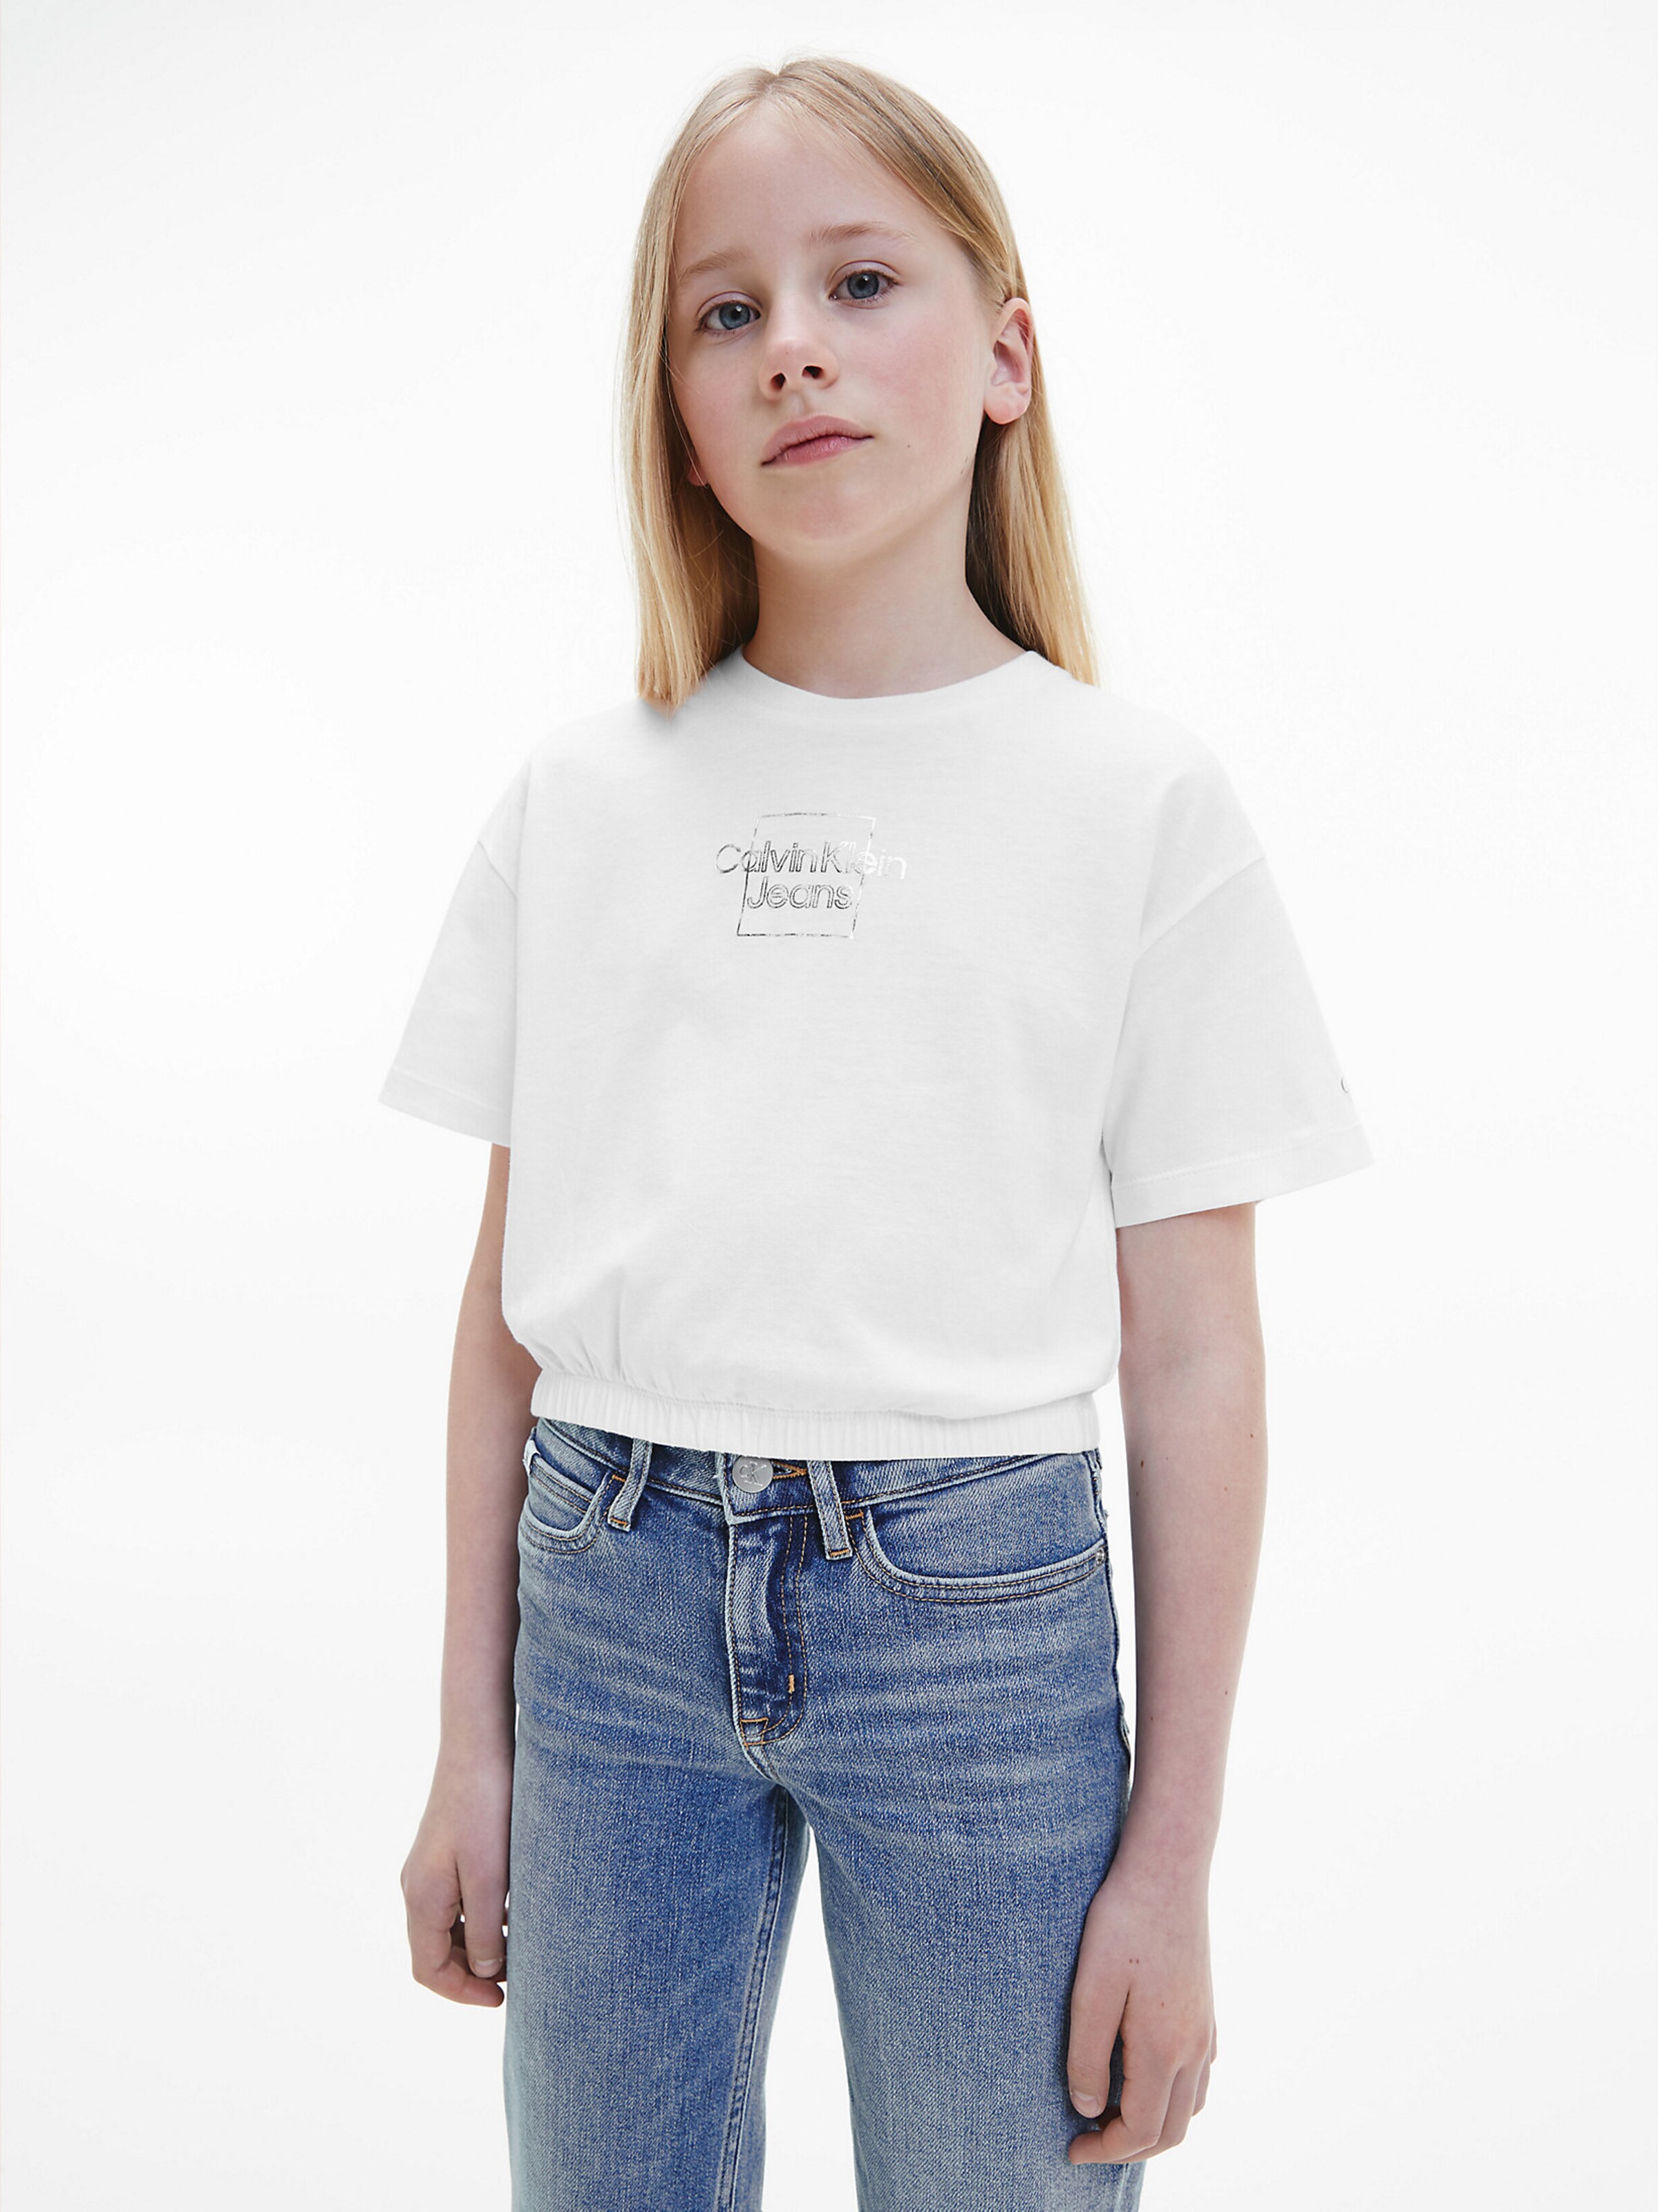 DE 176 Mädchen Bekleidung Shirts & Tops Tops Calvin Klein Mädchen Top Gr 